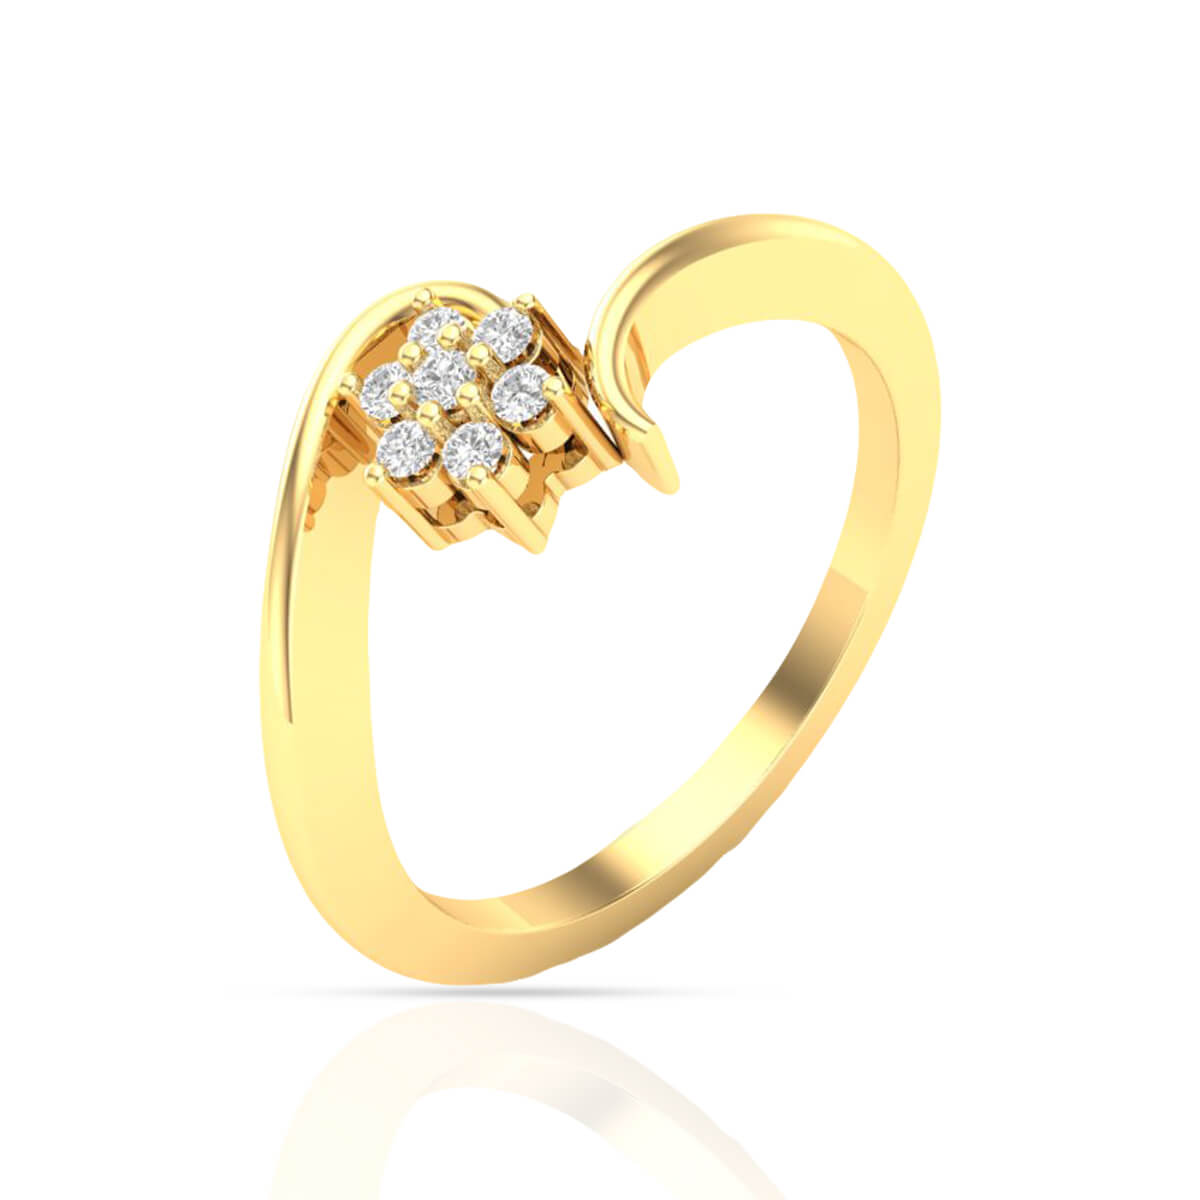 Buy Sterling Silver Rings for Women Online - Truesilver-saigonsouth.com.vn